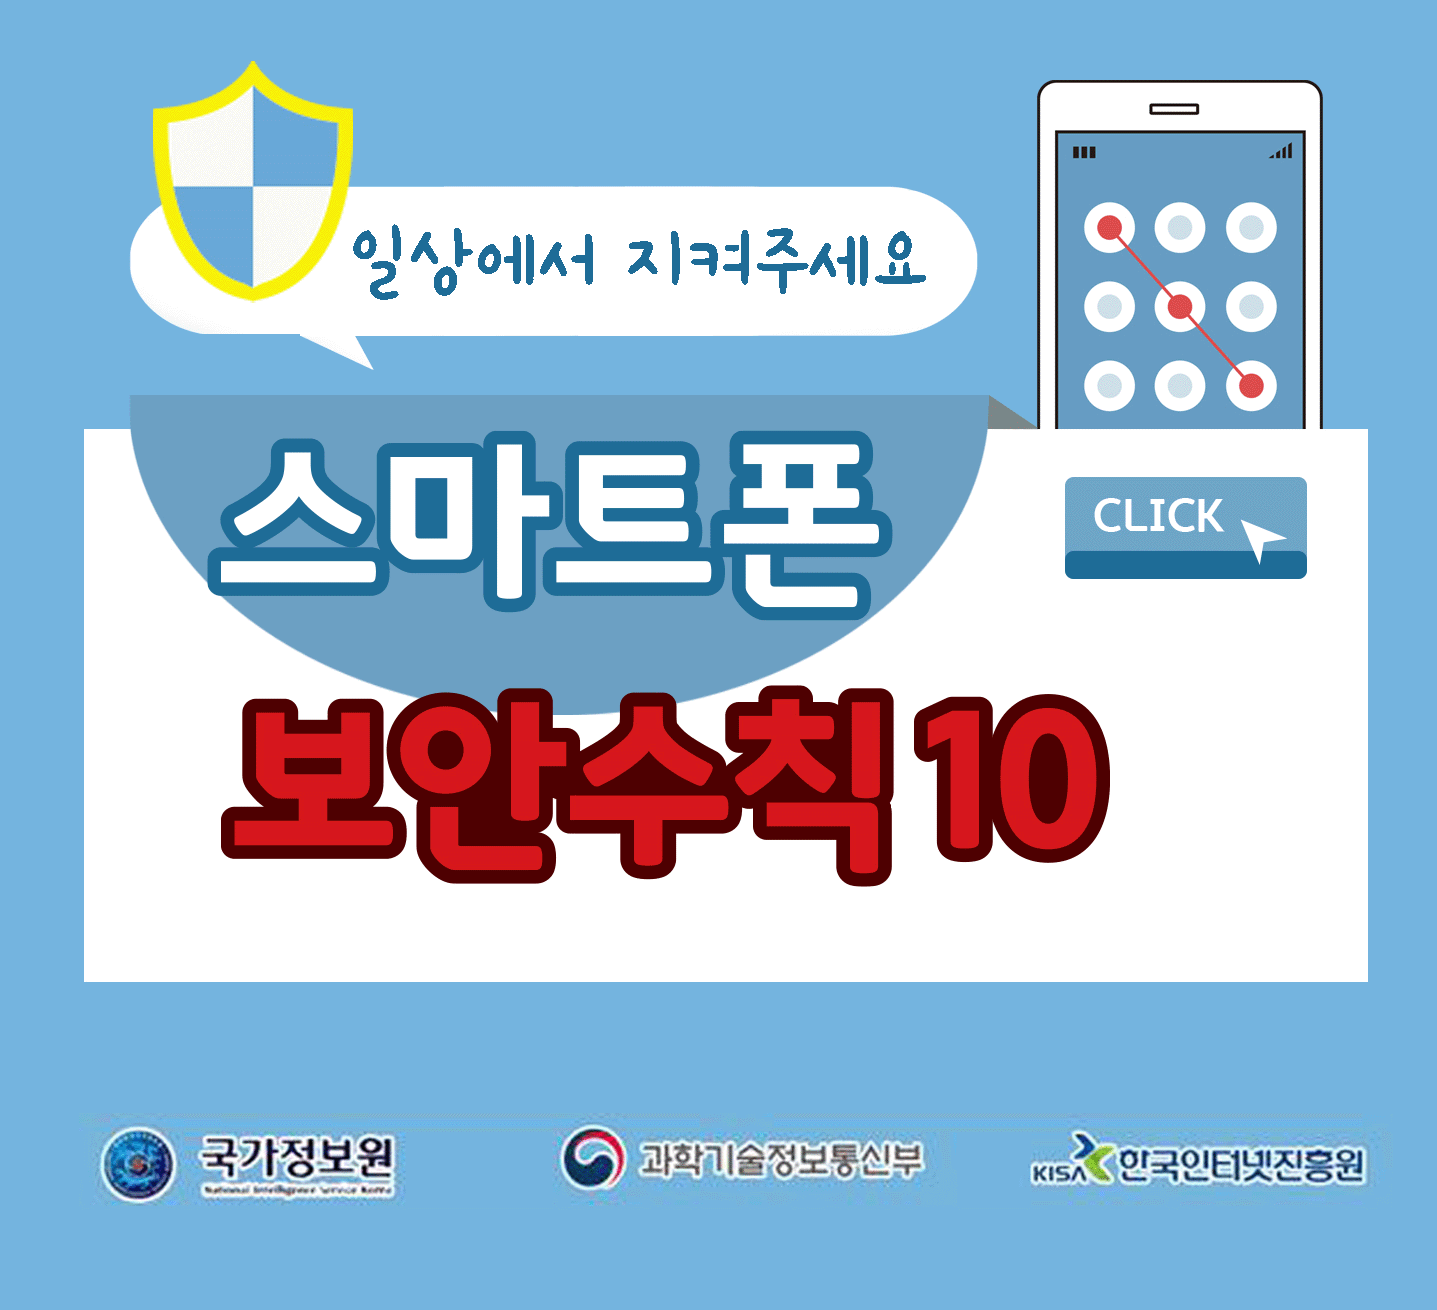 일상에서 지켜주세요
스마트폰 보안수칙 10 CLICK
국가정보원, 과학기술정보통신부, 한국인터넷진흥원;jsessionid=E641D740864757741BF99DCA0345EB61